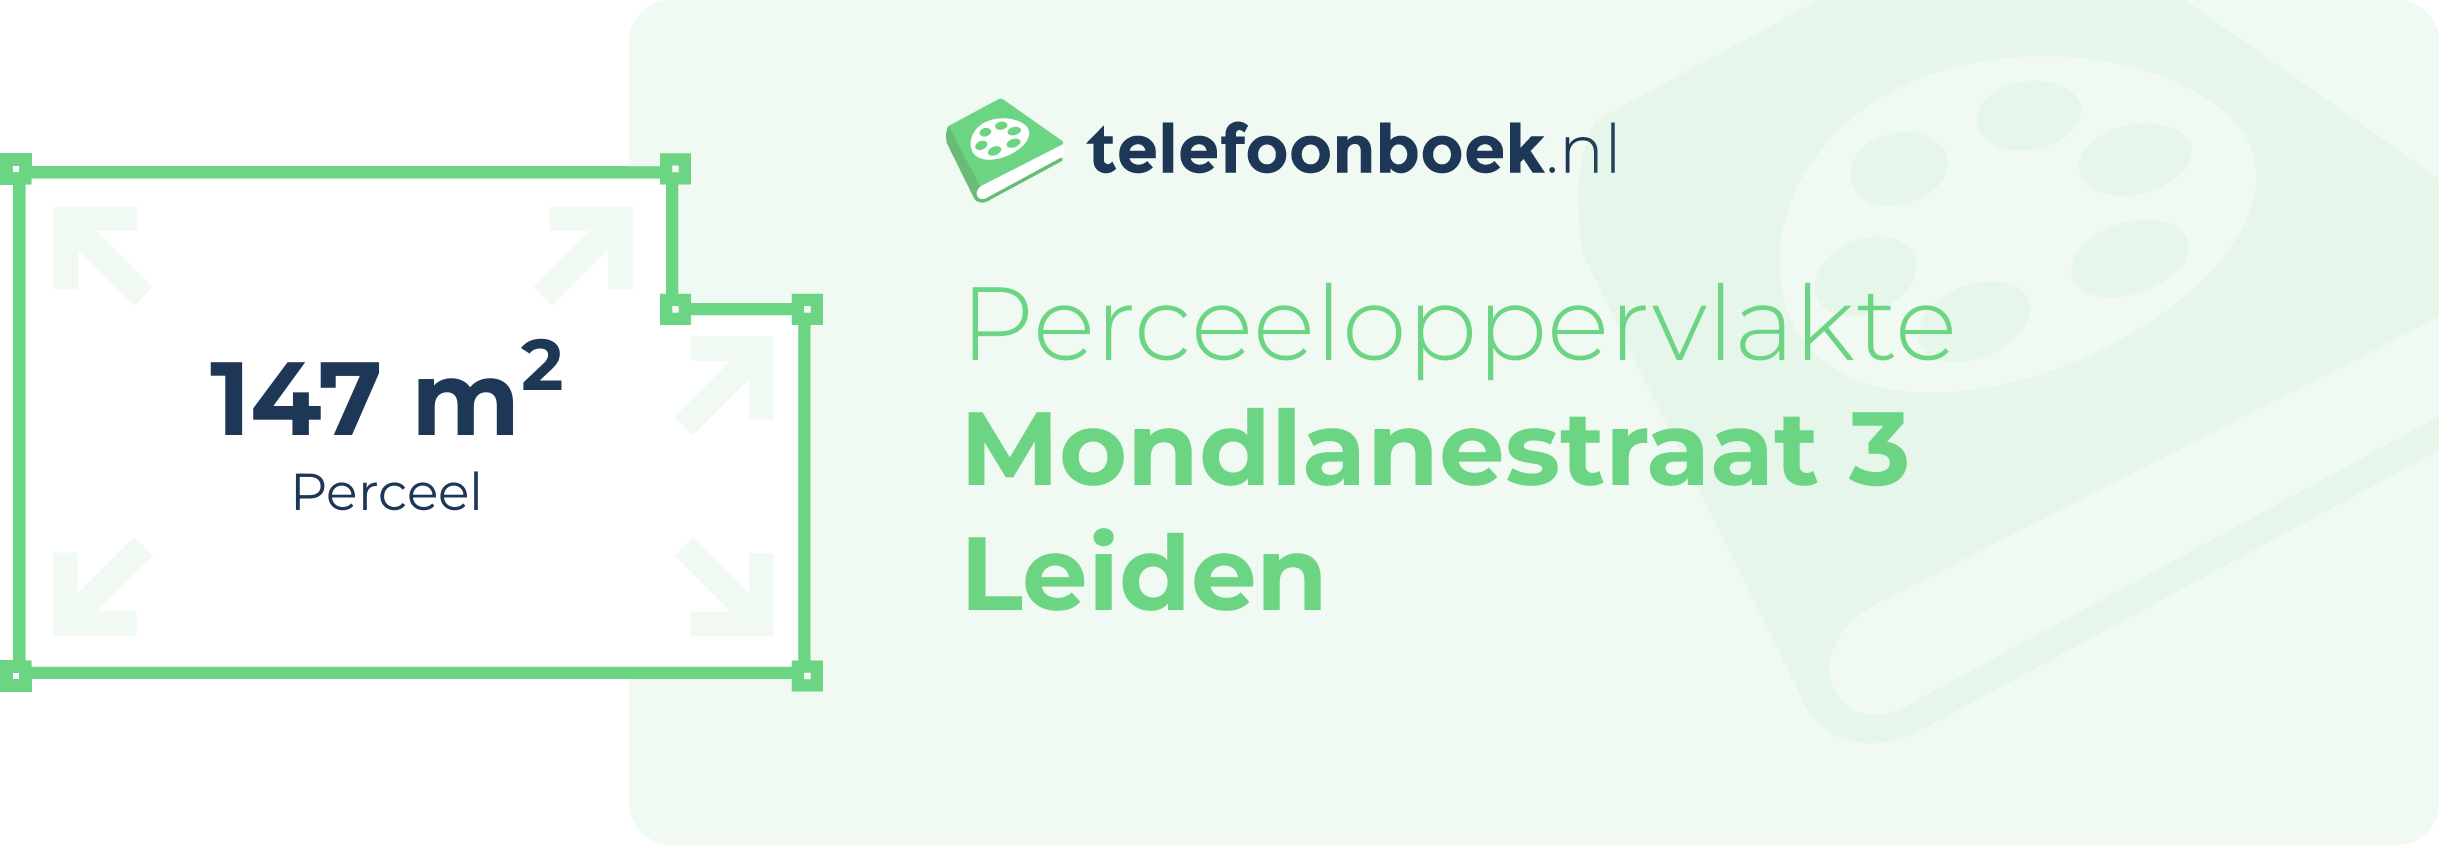 Perceeloppervlakte Mondlanestraat 3 Leiden